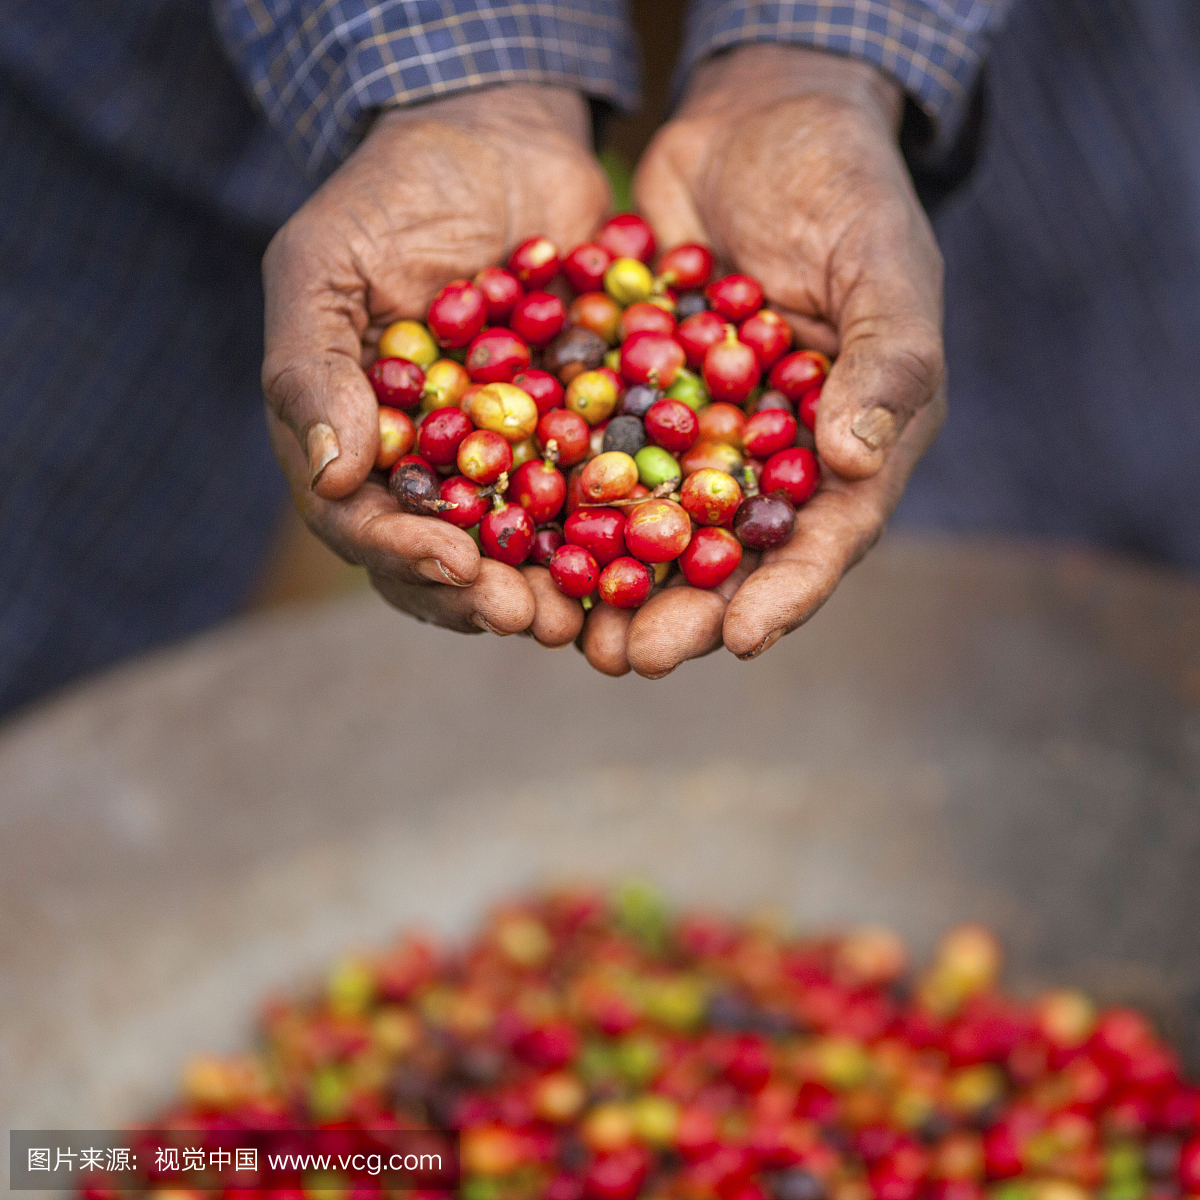 肯尼亚公平贸易咖啡农民